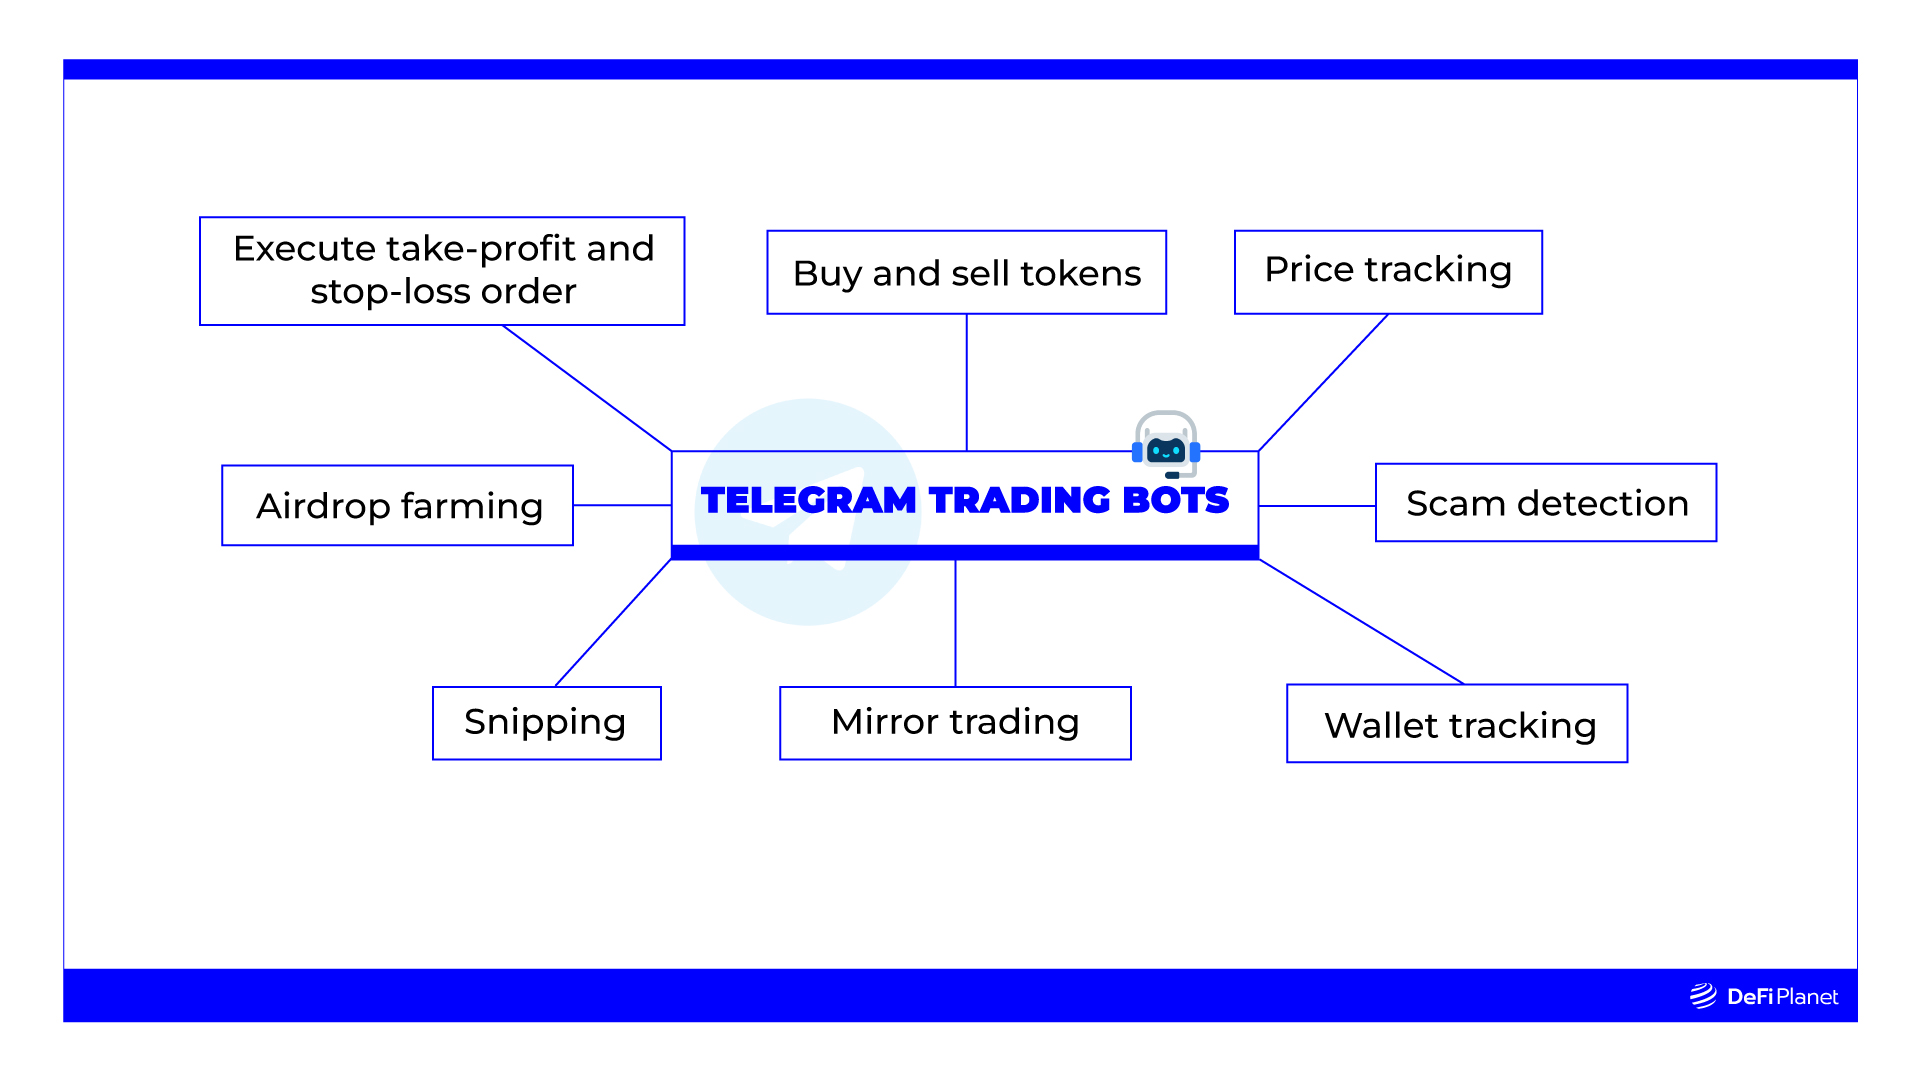 What Do Telegram Trading Bots Do?